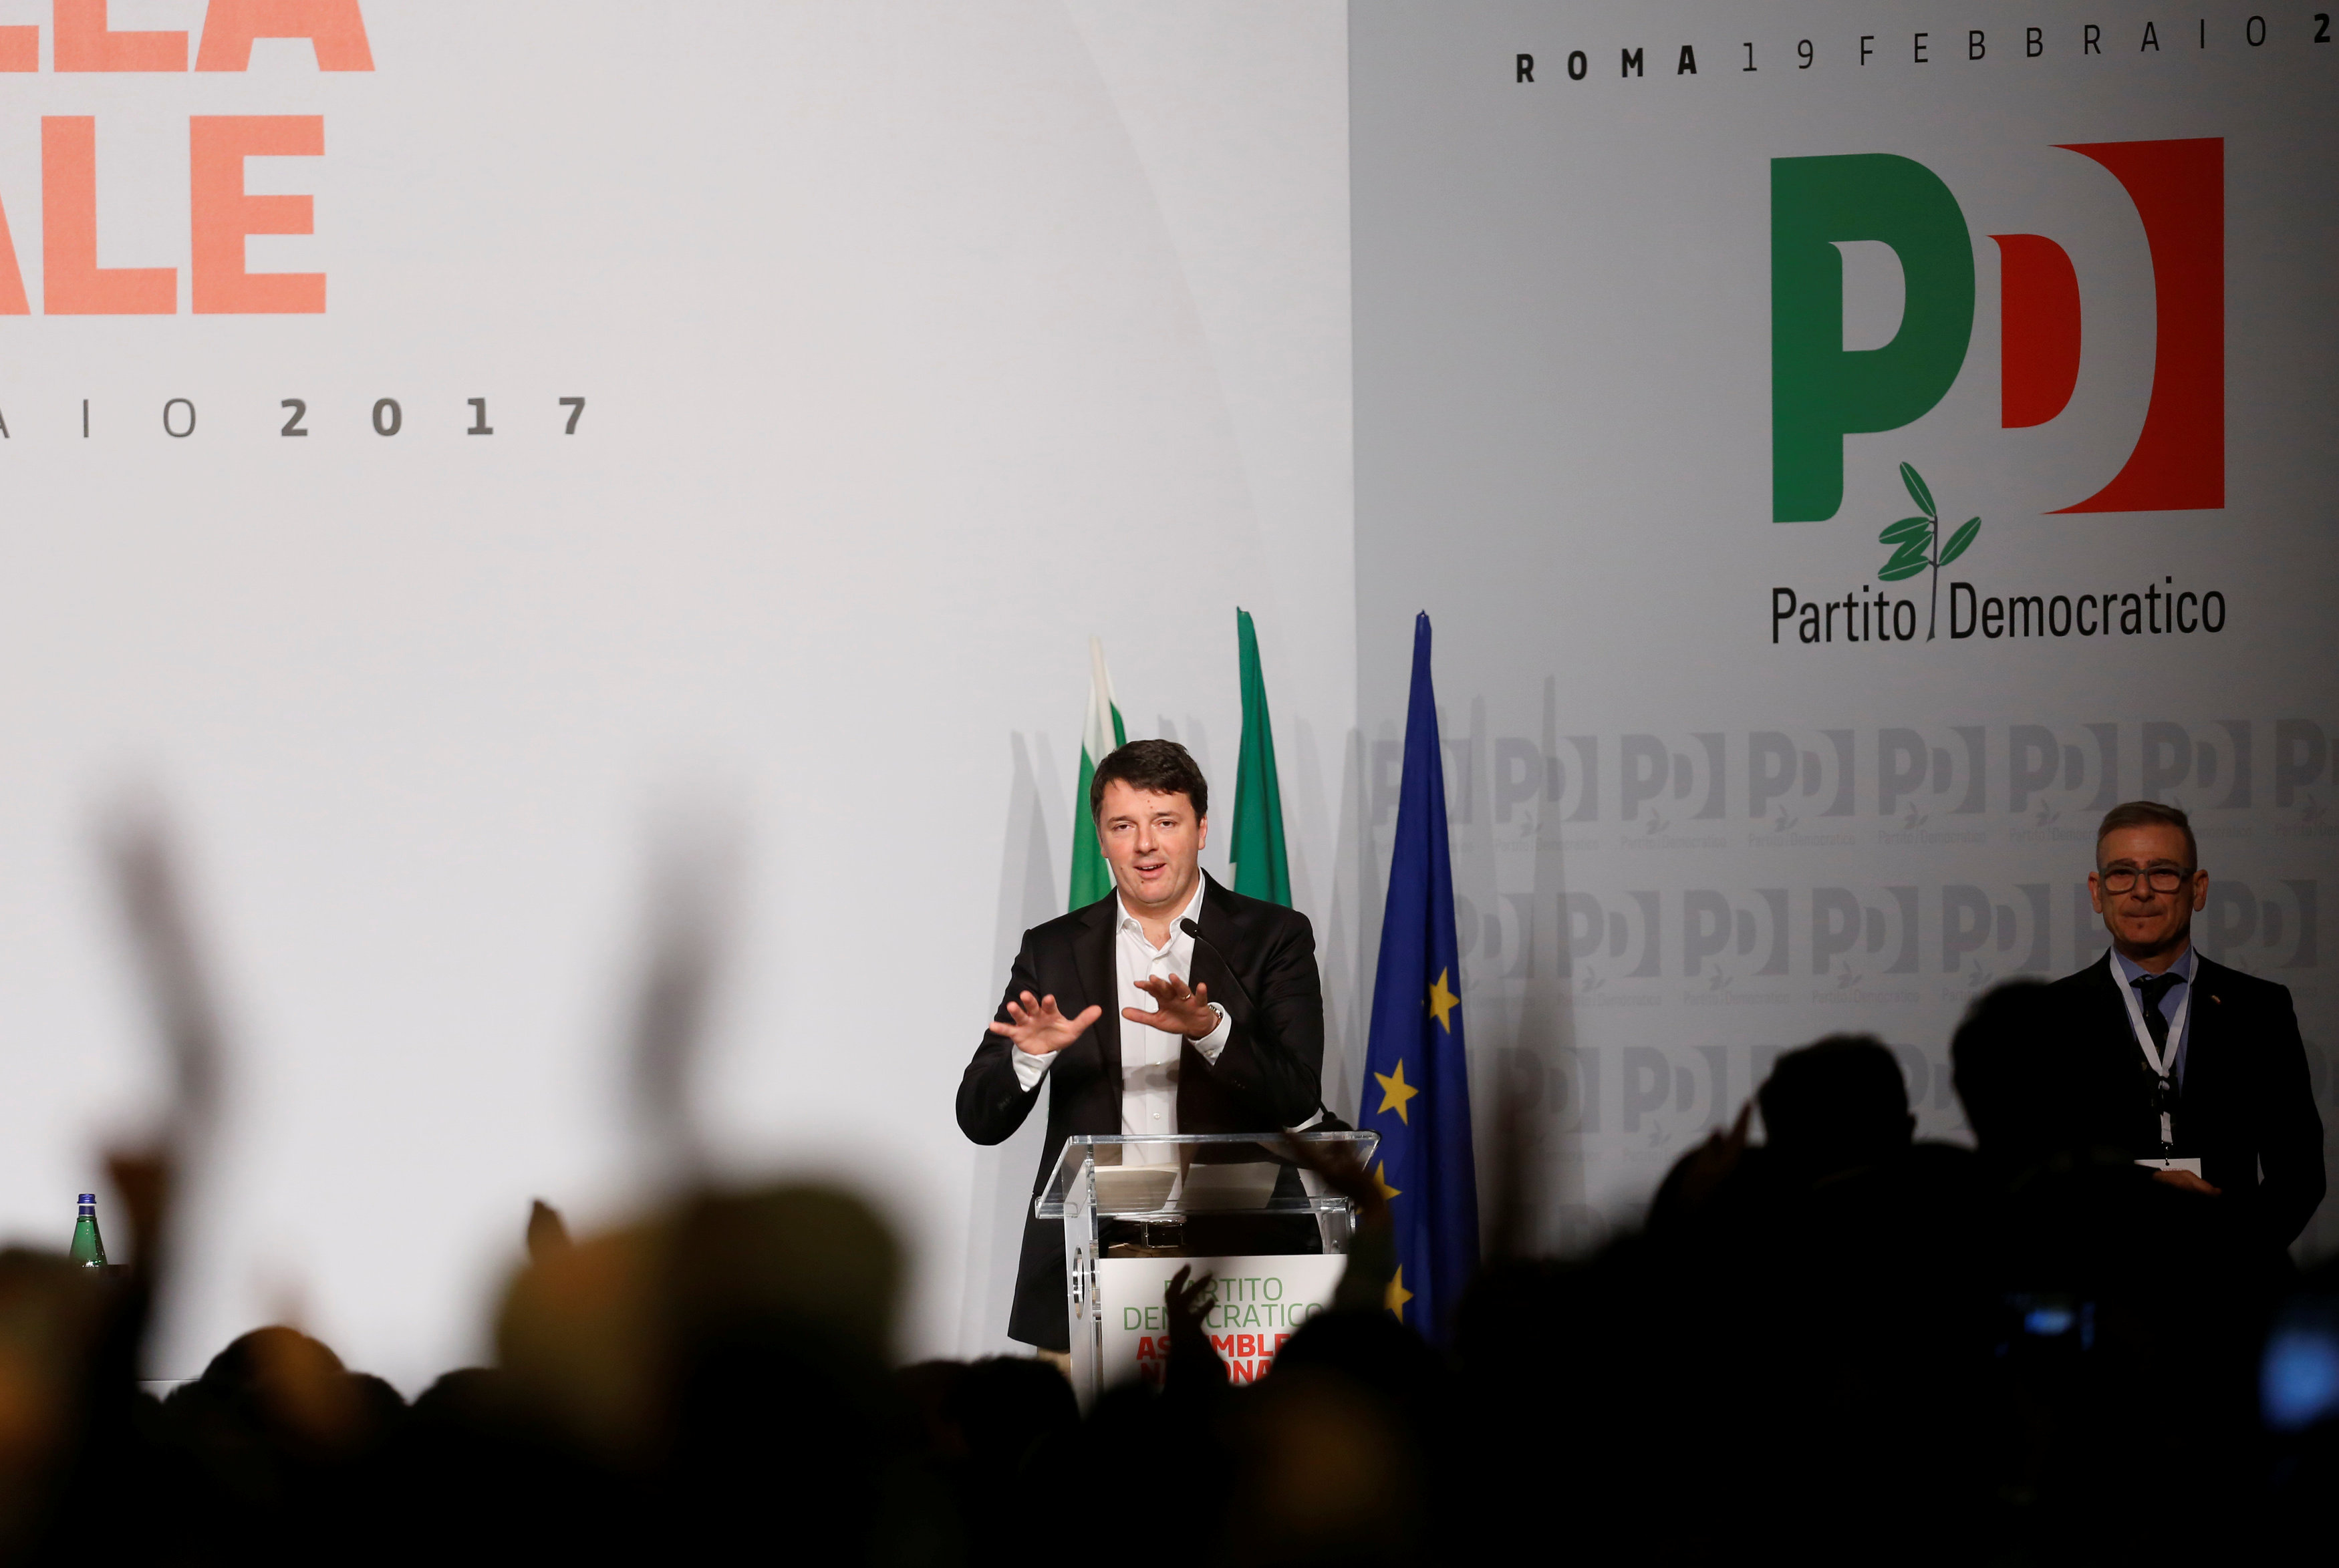 Como lo prometió, Renzi anunció el domingo en una reunión con otros líderes de su partido que estaba renunciando.